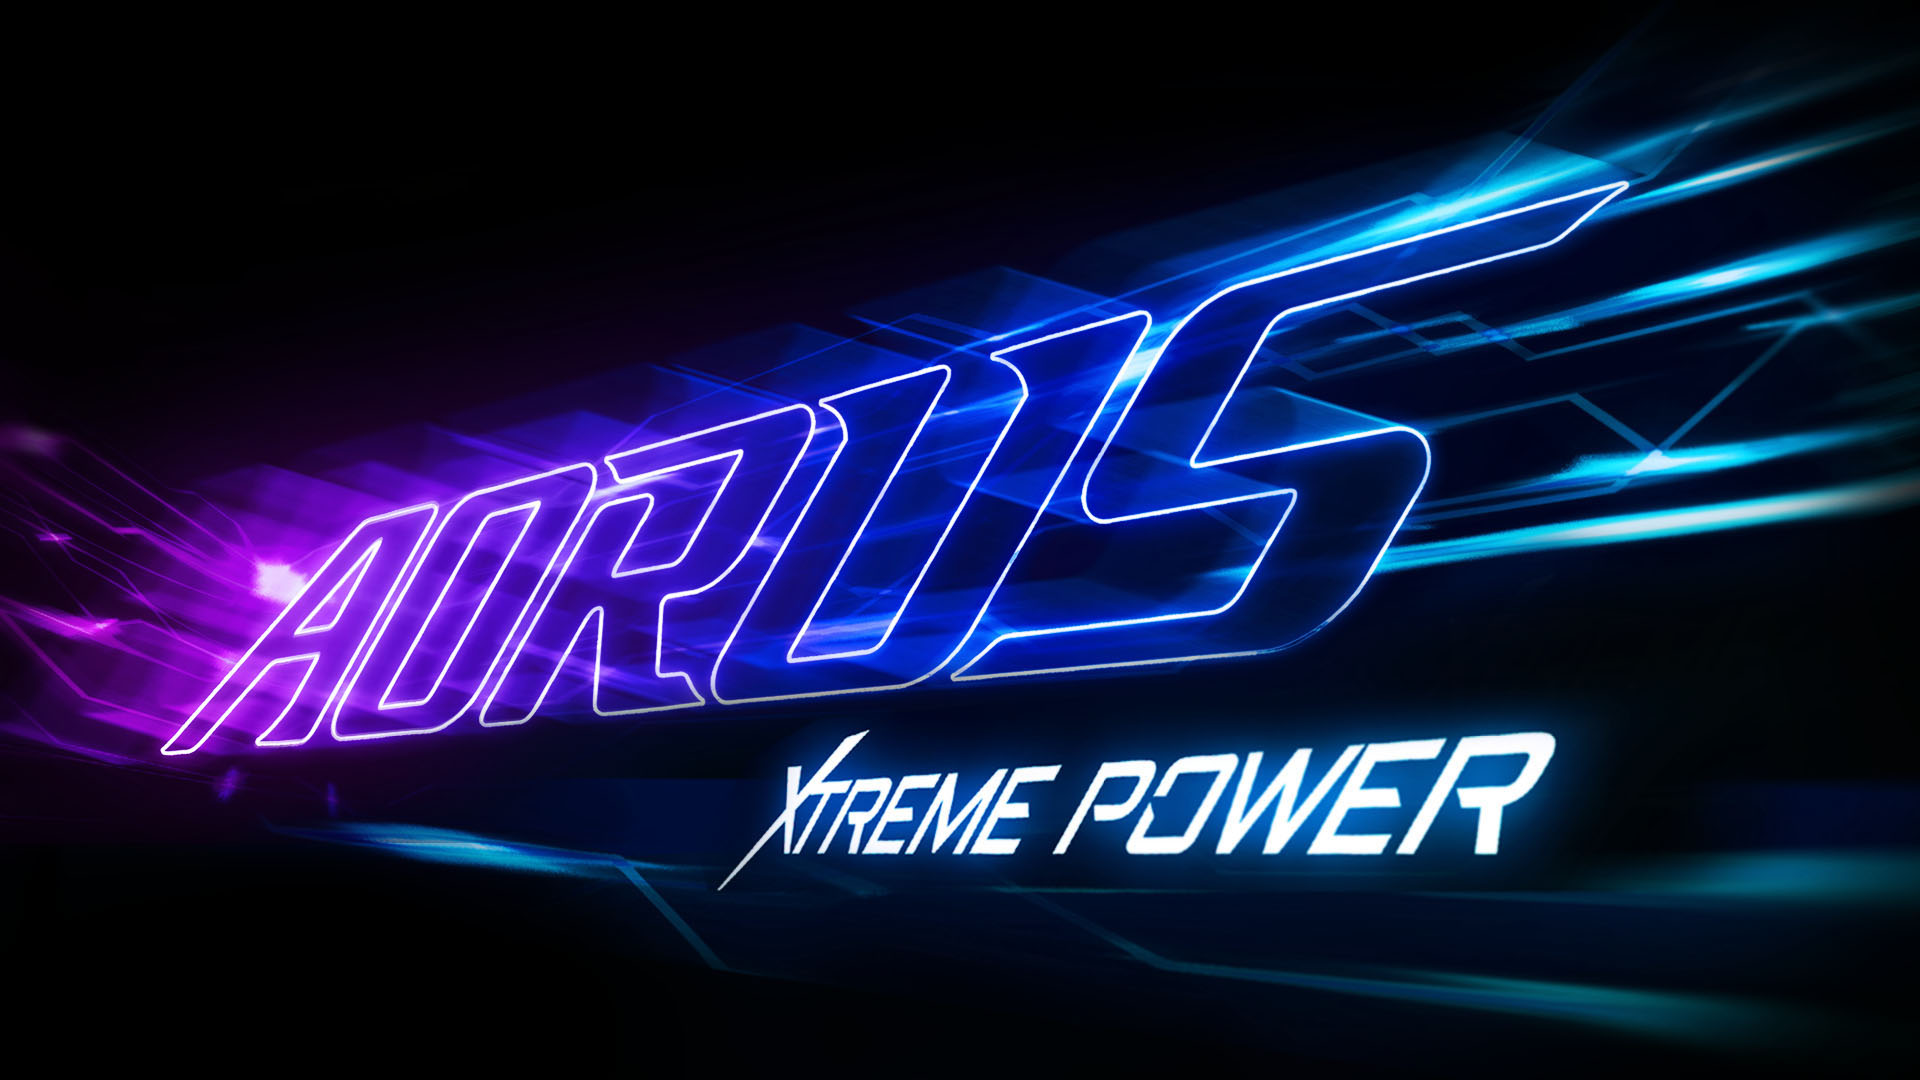 AORUS Xtreme Power